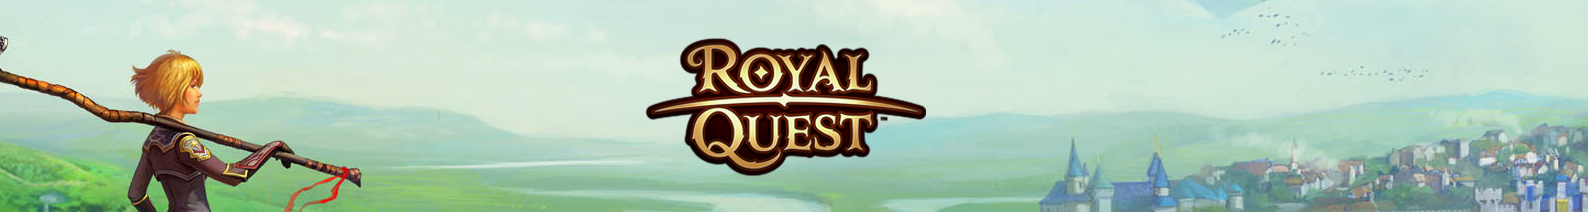 Royal Quest - bannière